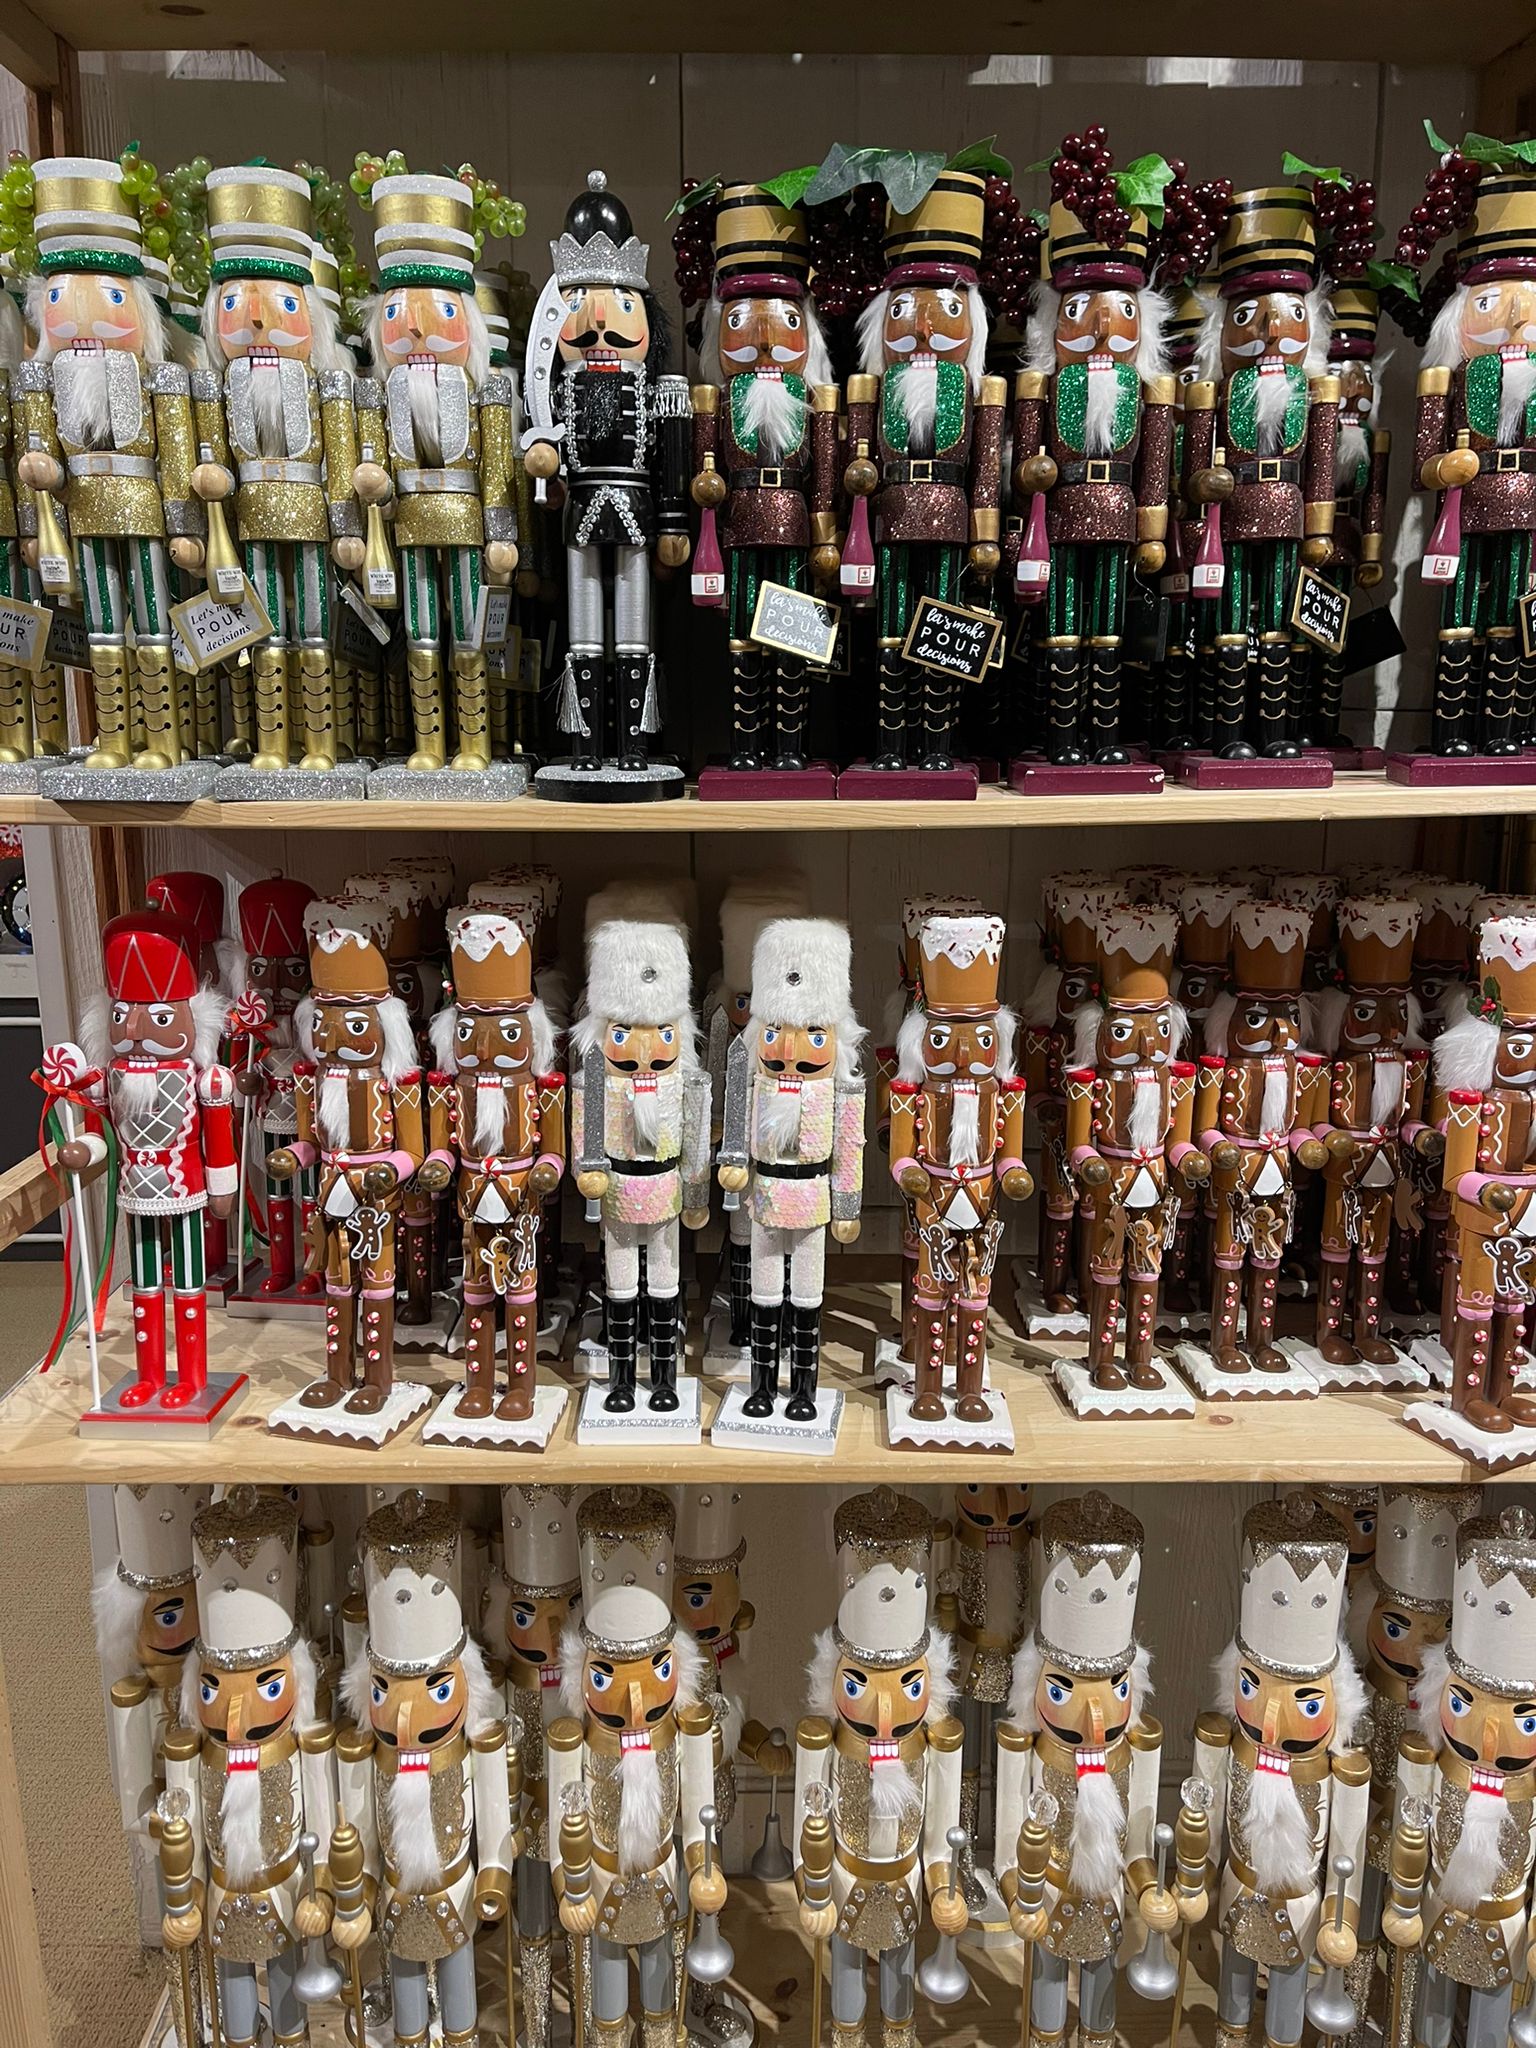 natale cosa fare new york periodo natalizio guida soldatini macy's shopping decorazioni